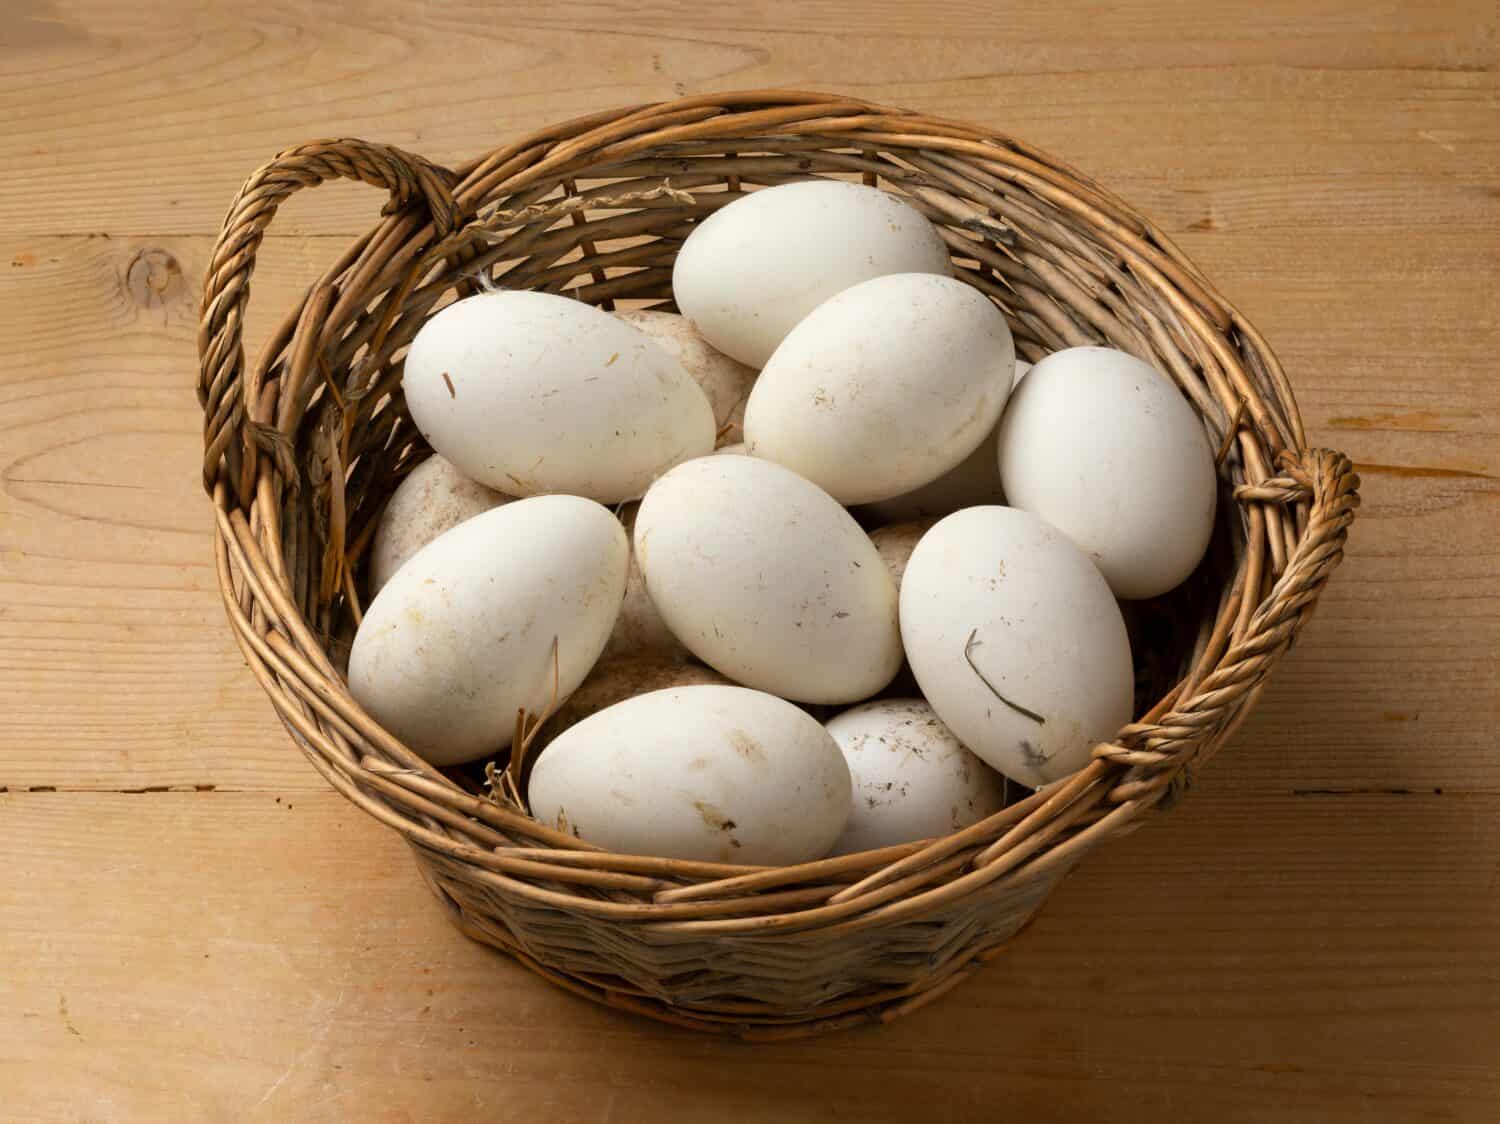 Cestino con grandi uova d'oca bianche appena raccolte da vicino